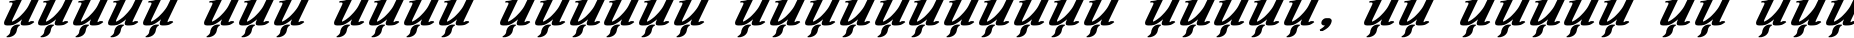 Пример написания шрифтом Academy Italic Bold Italic текста на русском